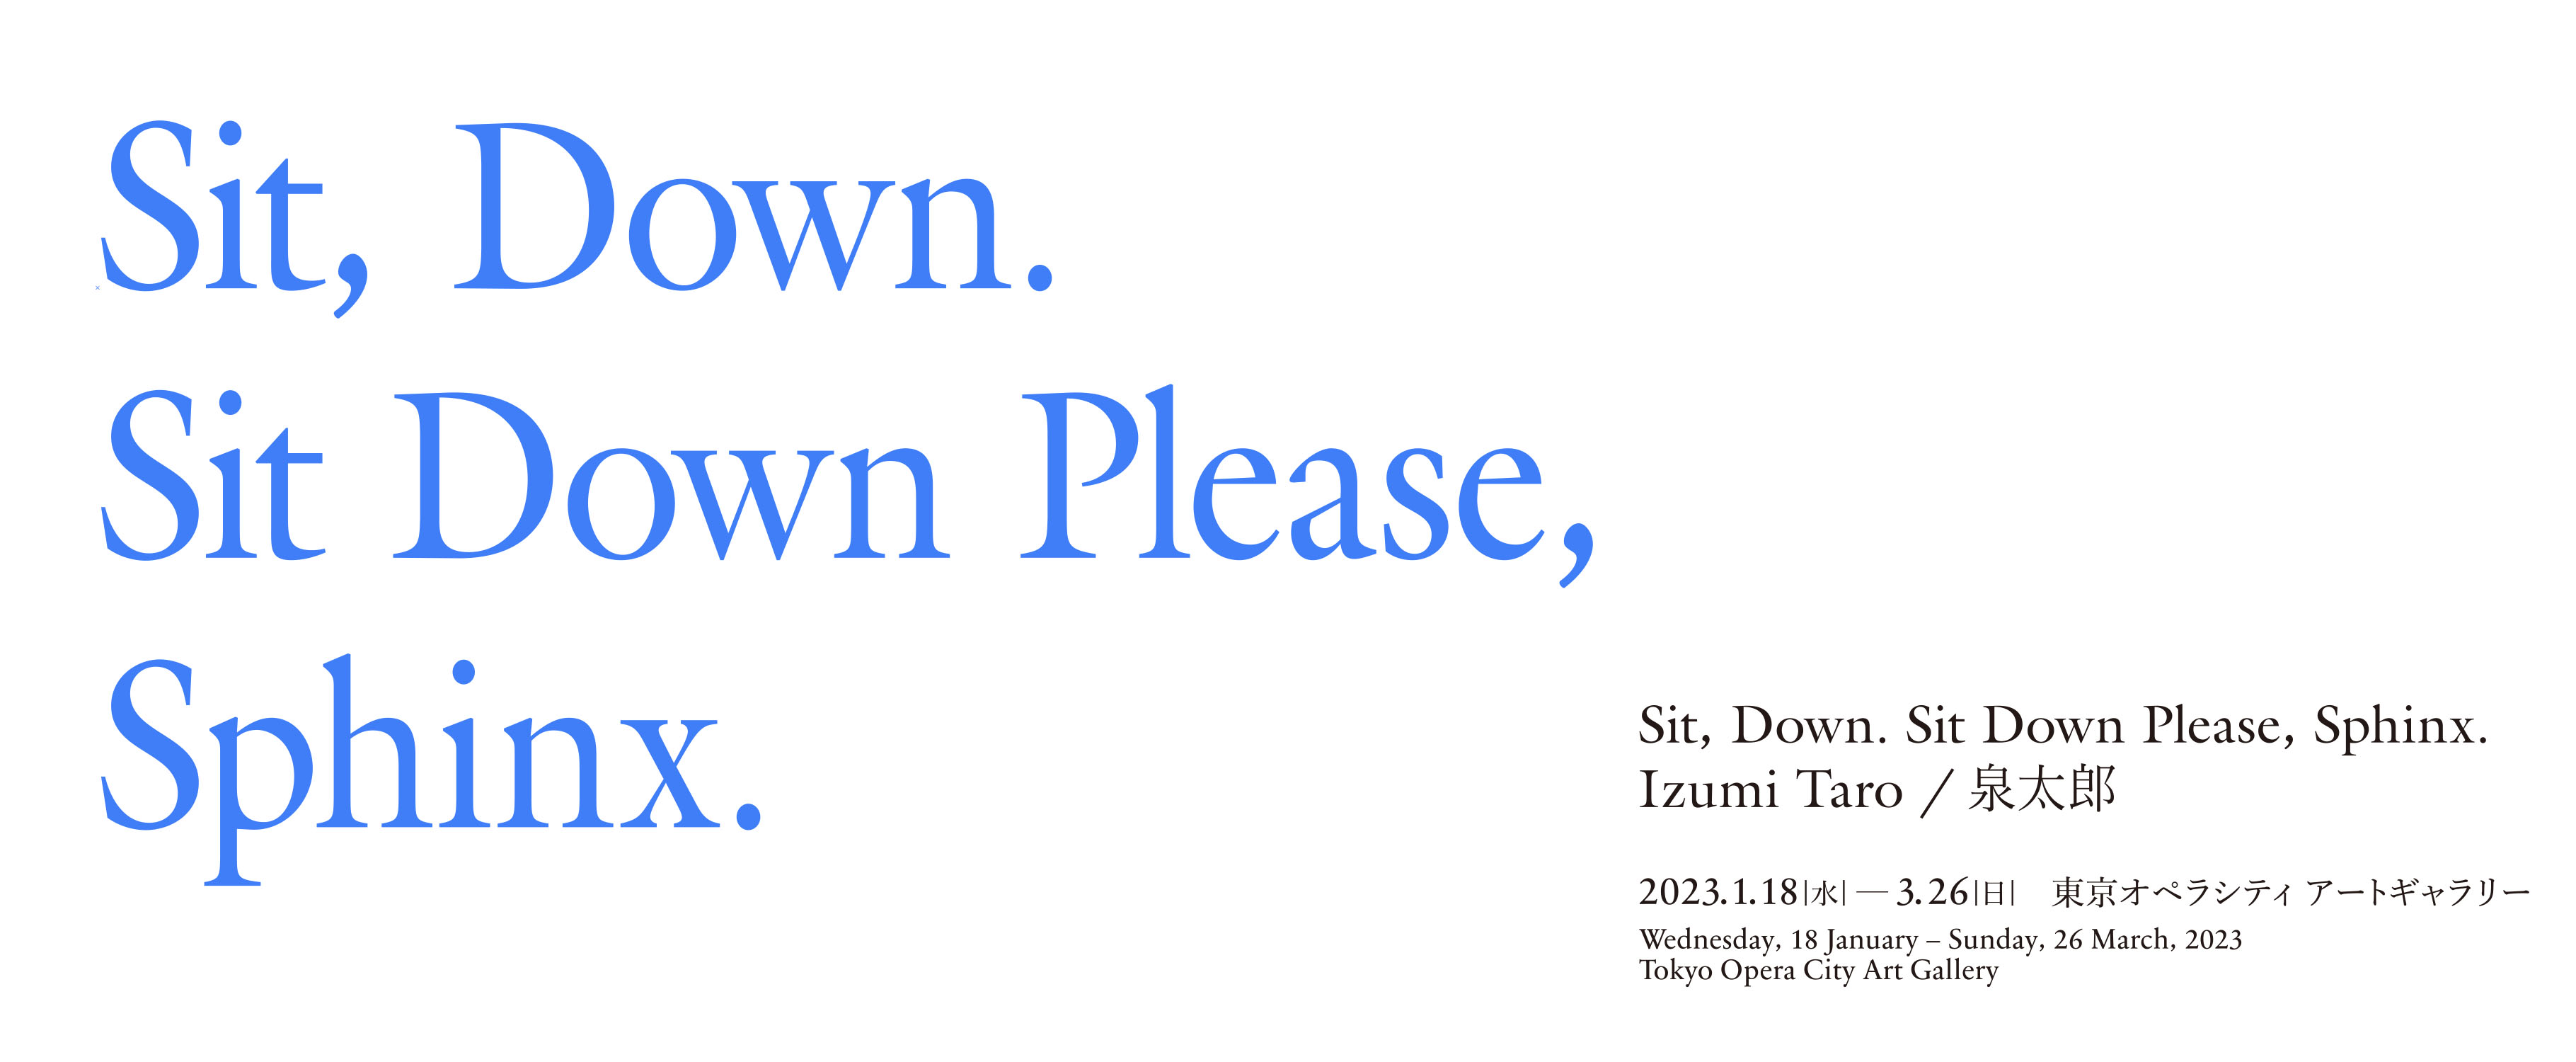 Izumi Taro Sit,Down.Sit Down Please,Sphinx. 2022.1.18 Wed-3.26 sun